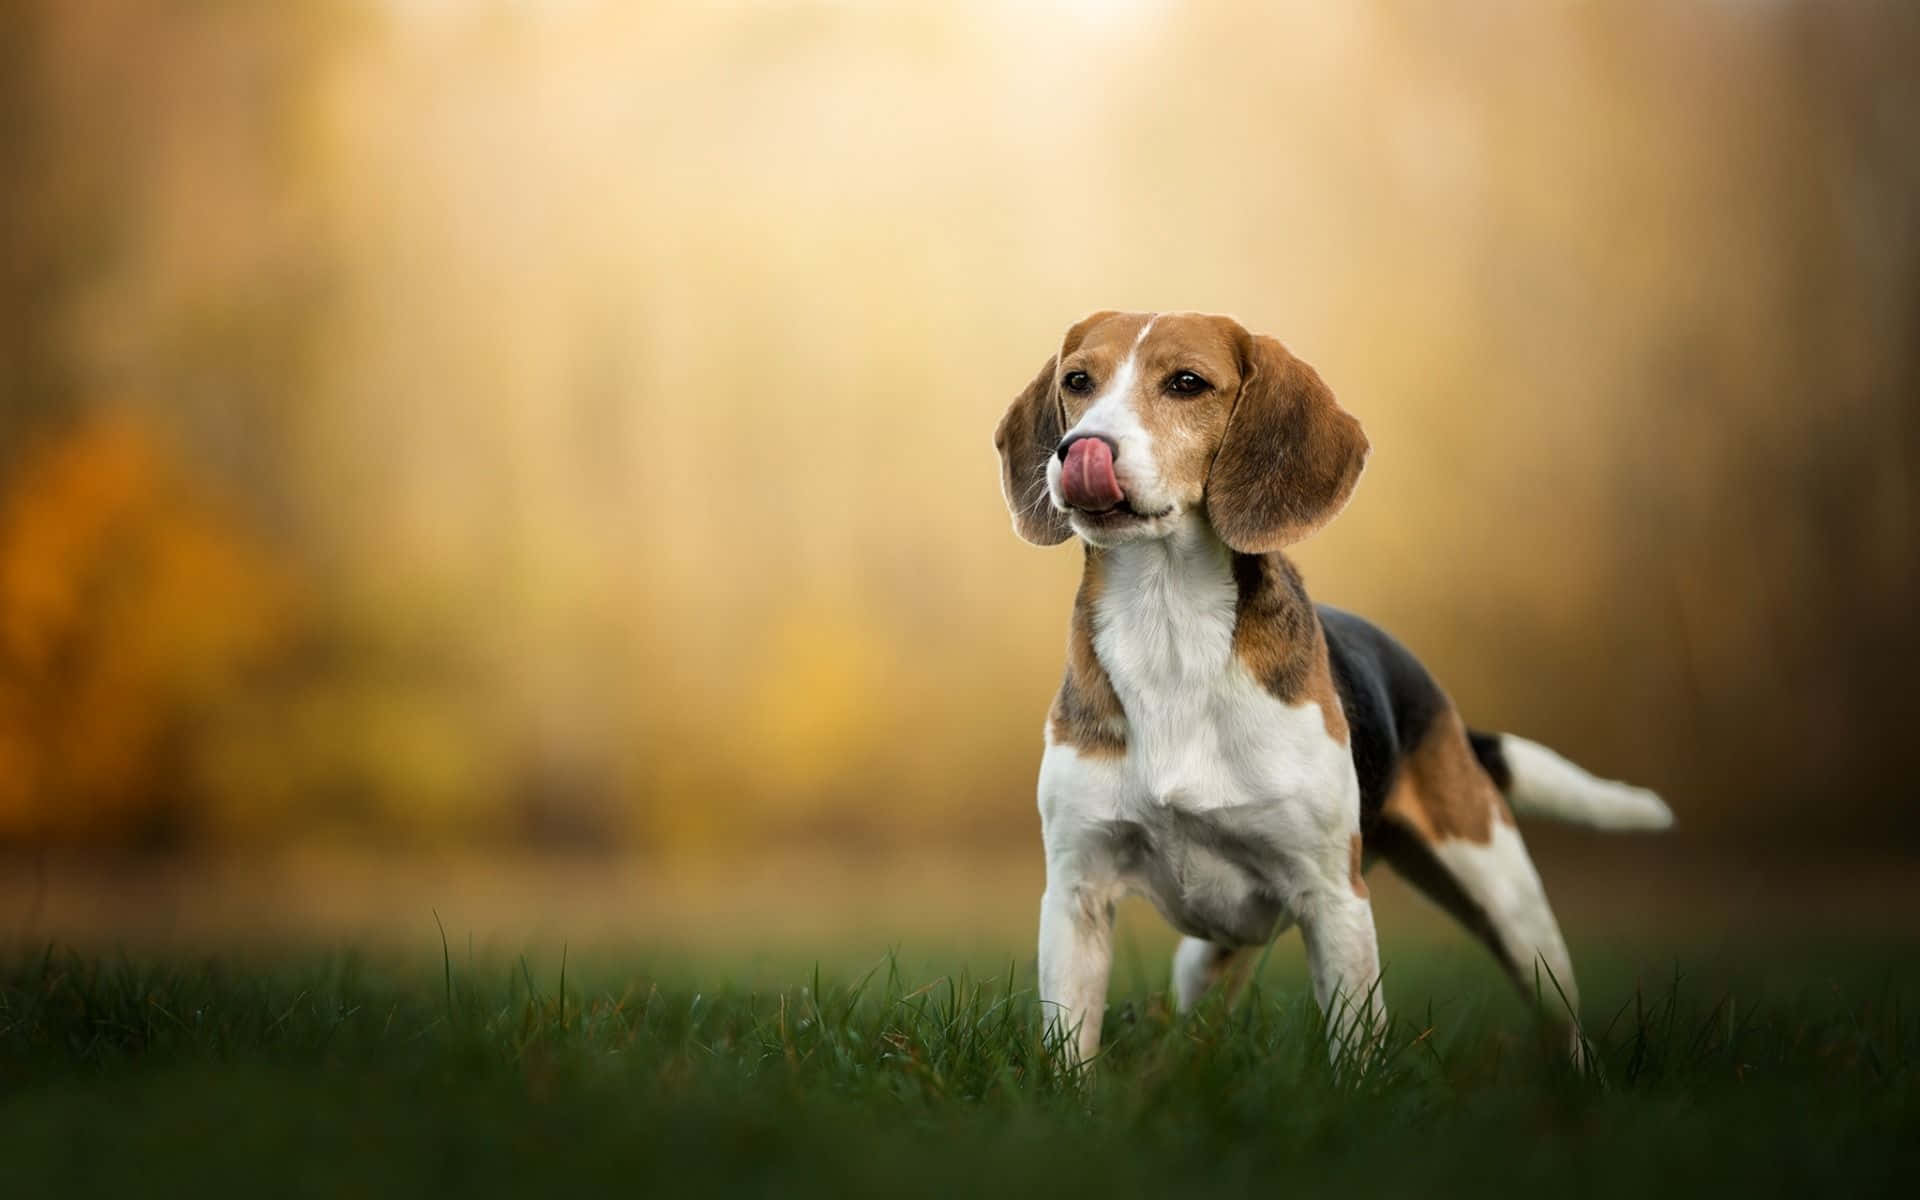 Uncucciolo Carino Di Beagle Pronto Per Unirsi Alla Sua Famiglia.